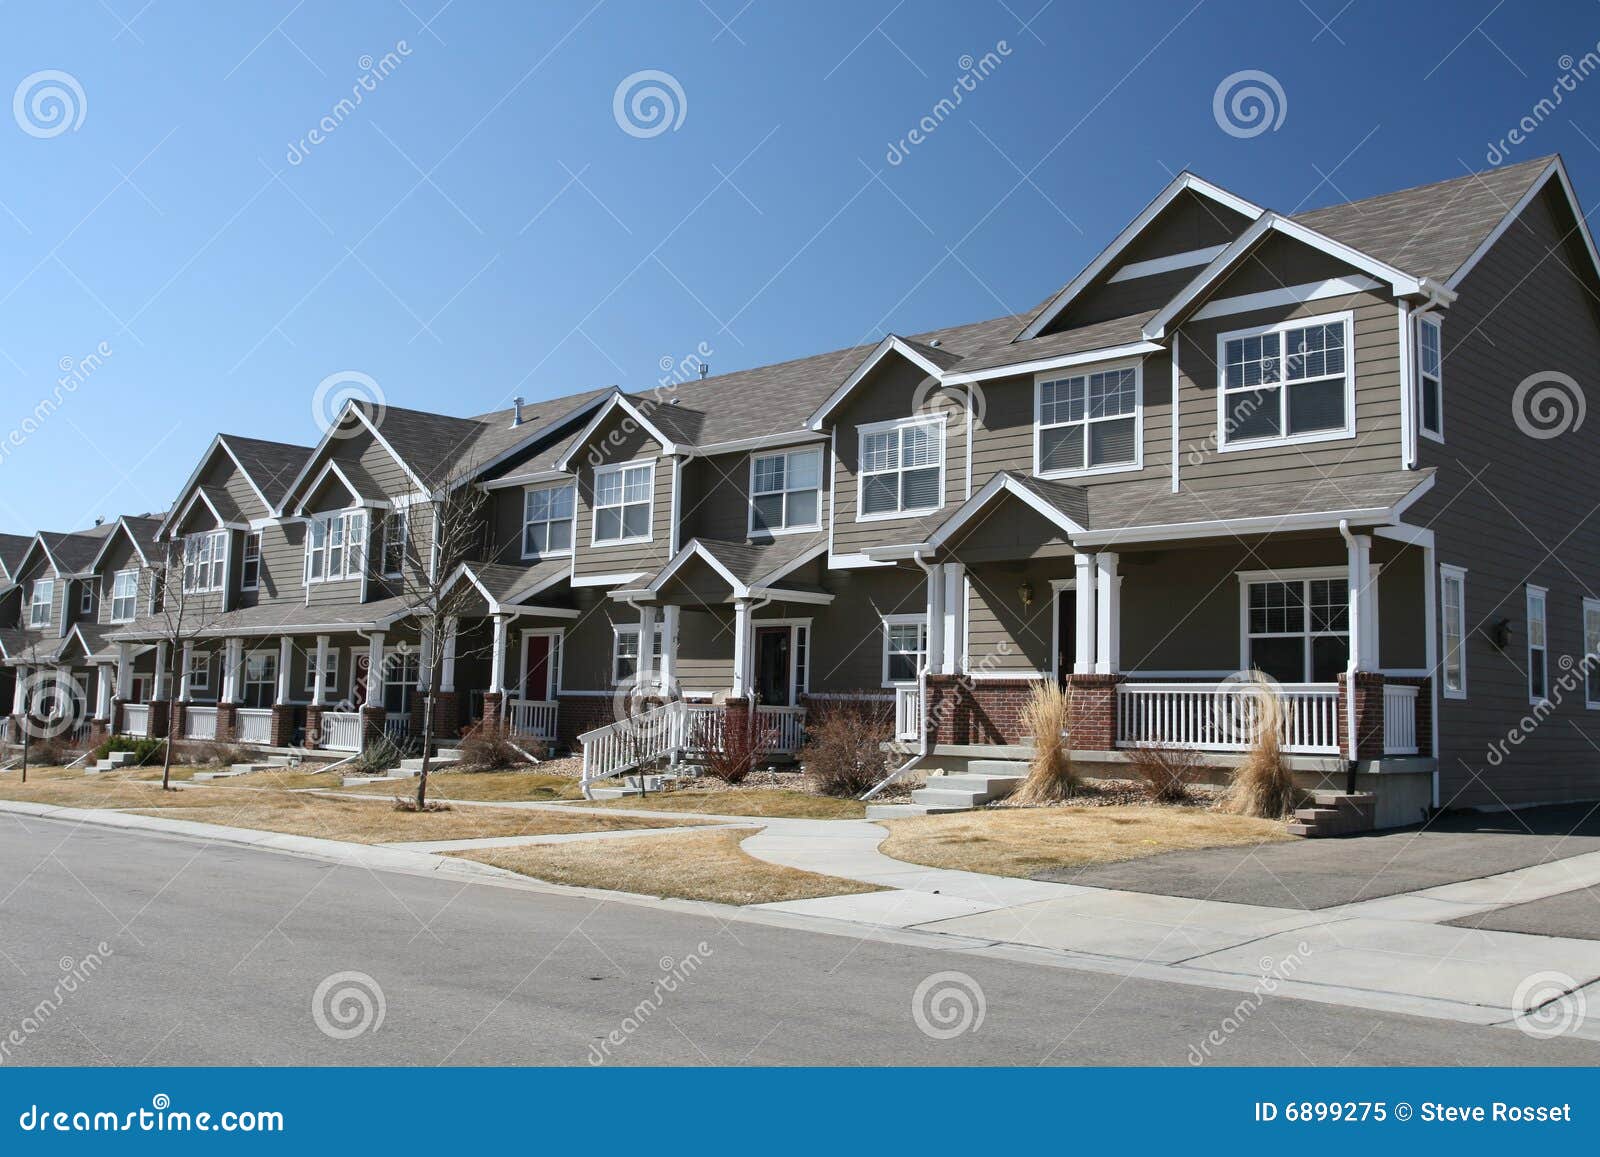 suburban town homes